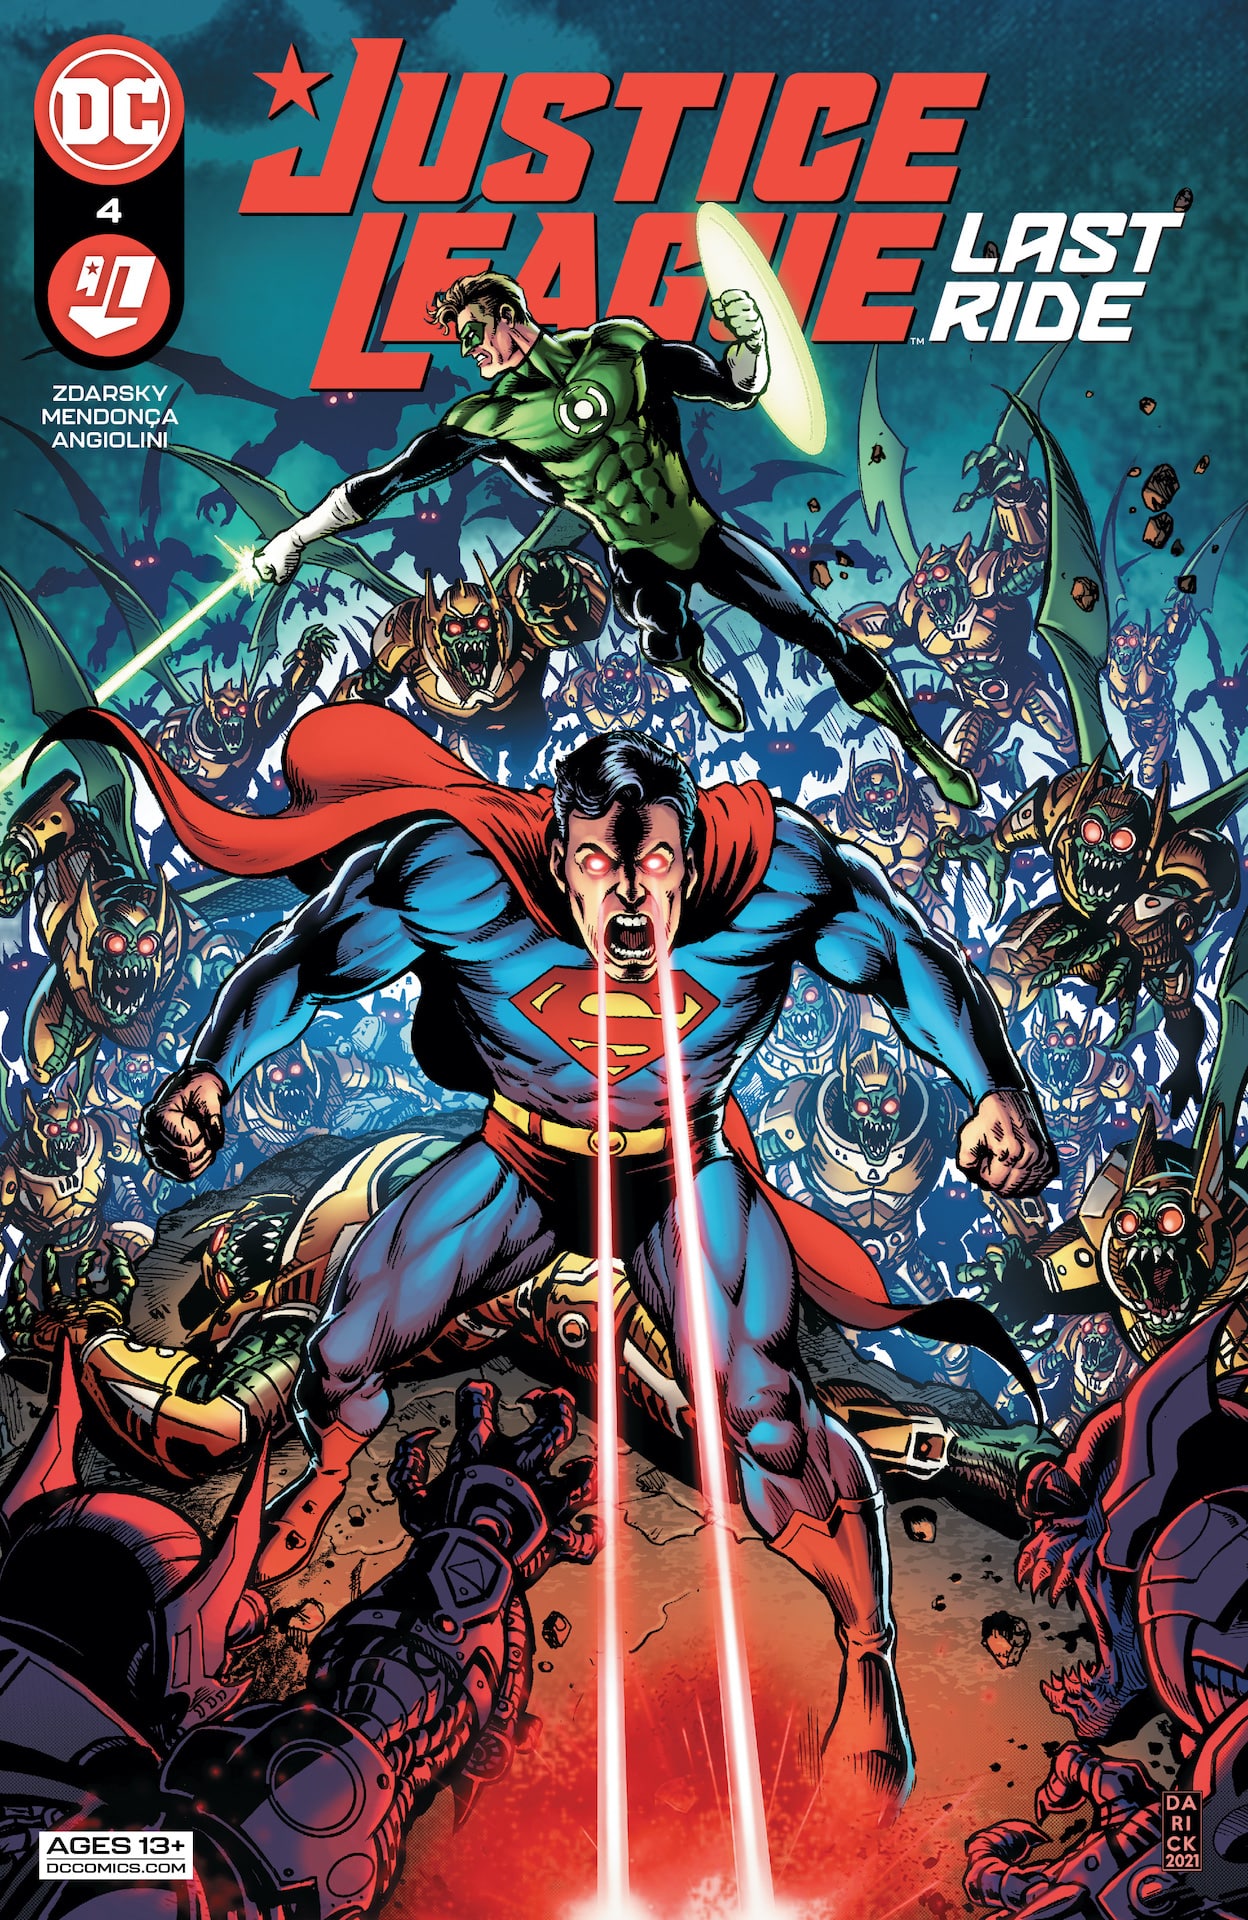 DC Preview: Justice League Last Ride #4